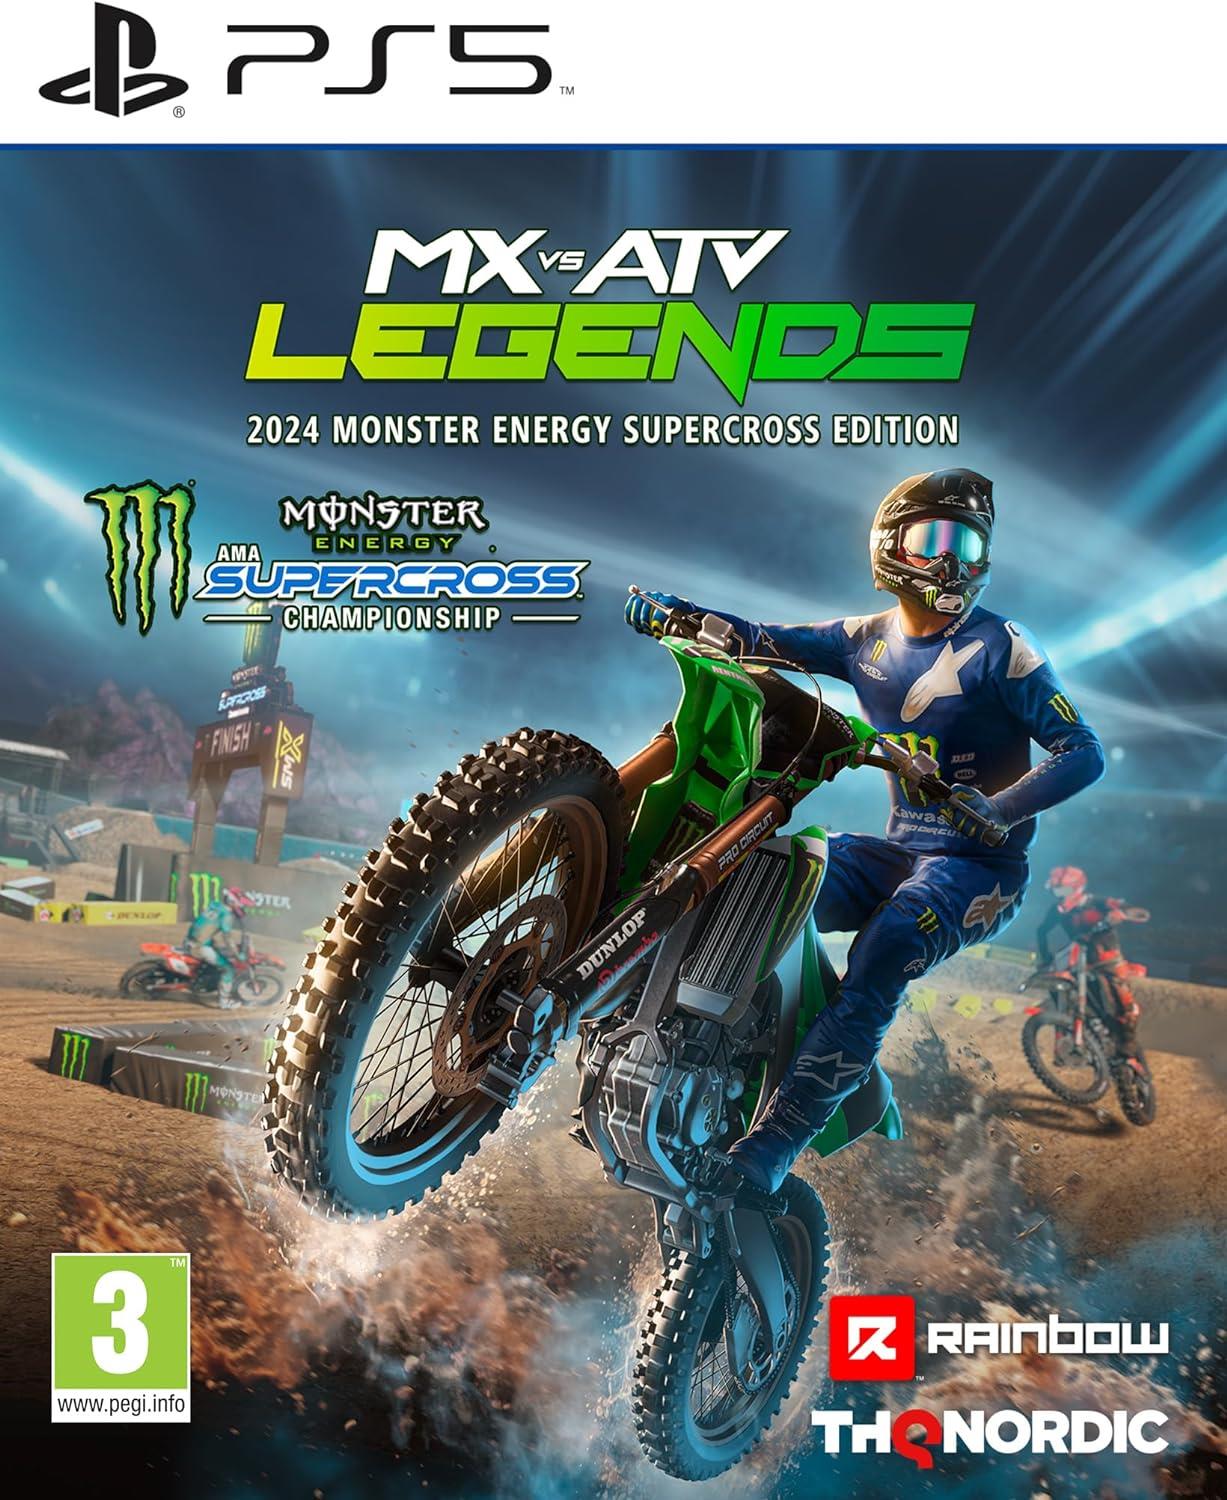 MX vs ATV Legends 2024 Monster Energy Supercross Edition PS5 Game